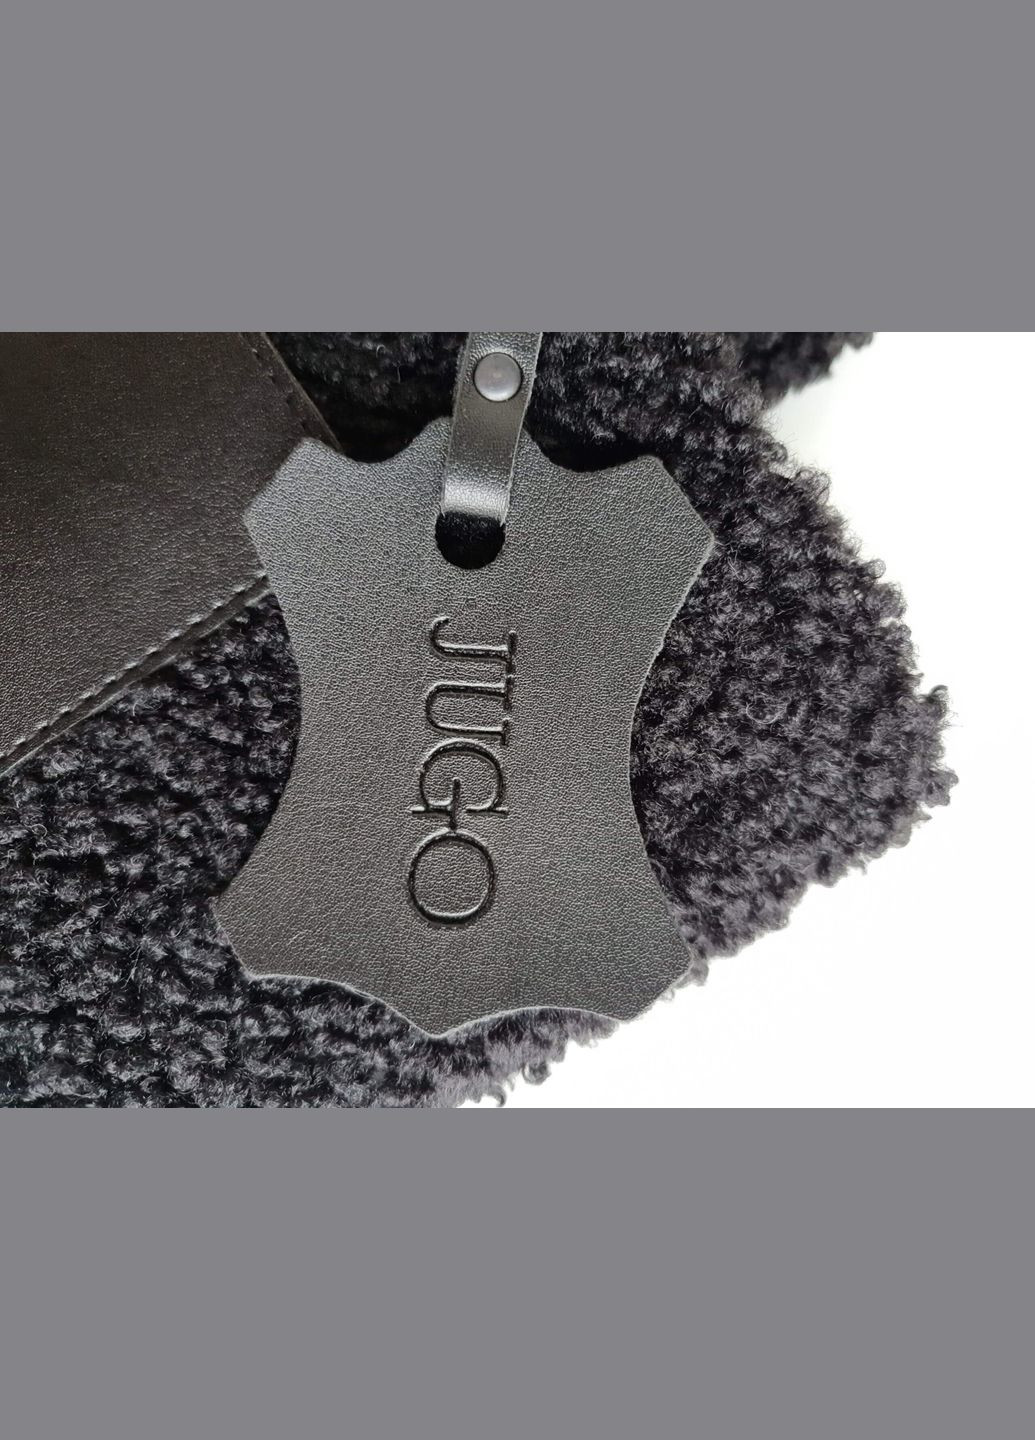 Женская меховая сумка-шопер Rami mod 2 черного цвета искусственный мех и экокожа JUGO rami 2 (288577282)